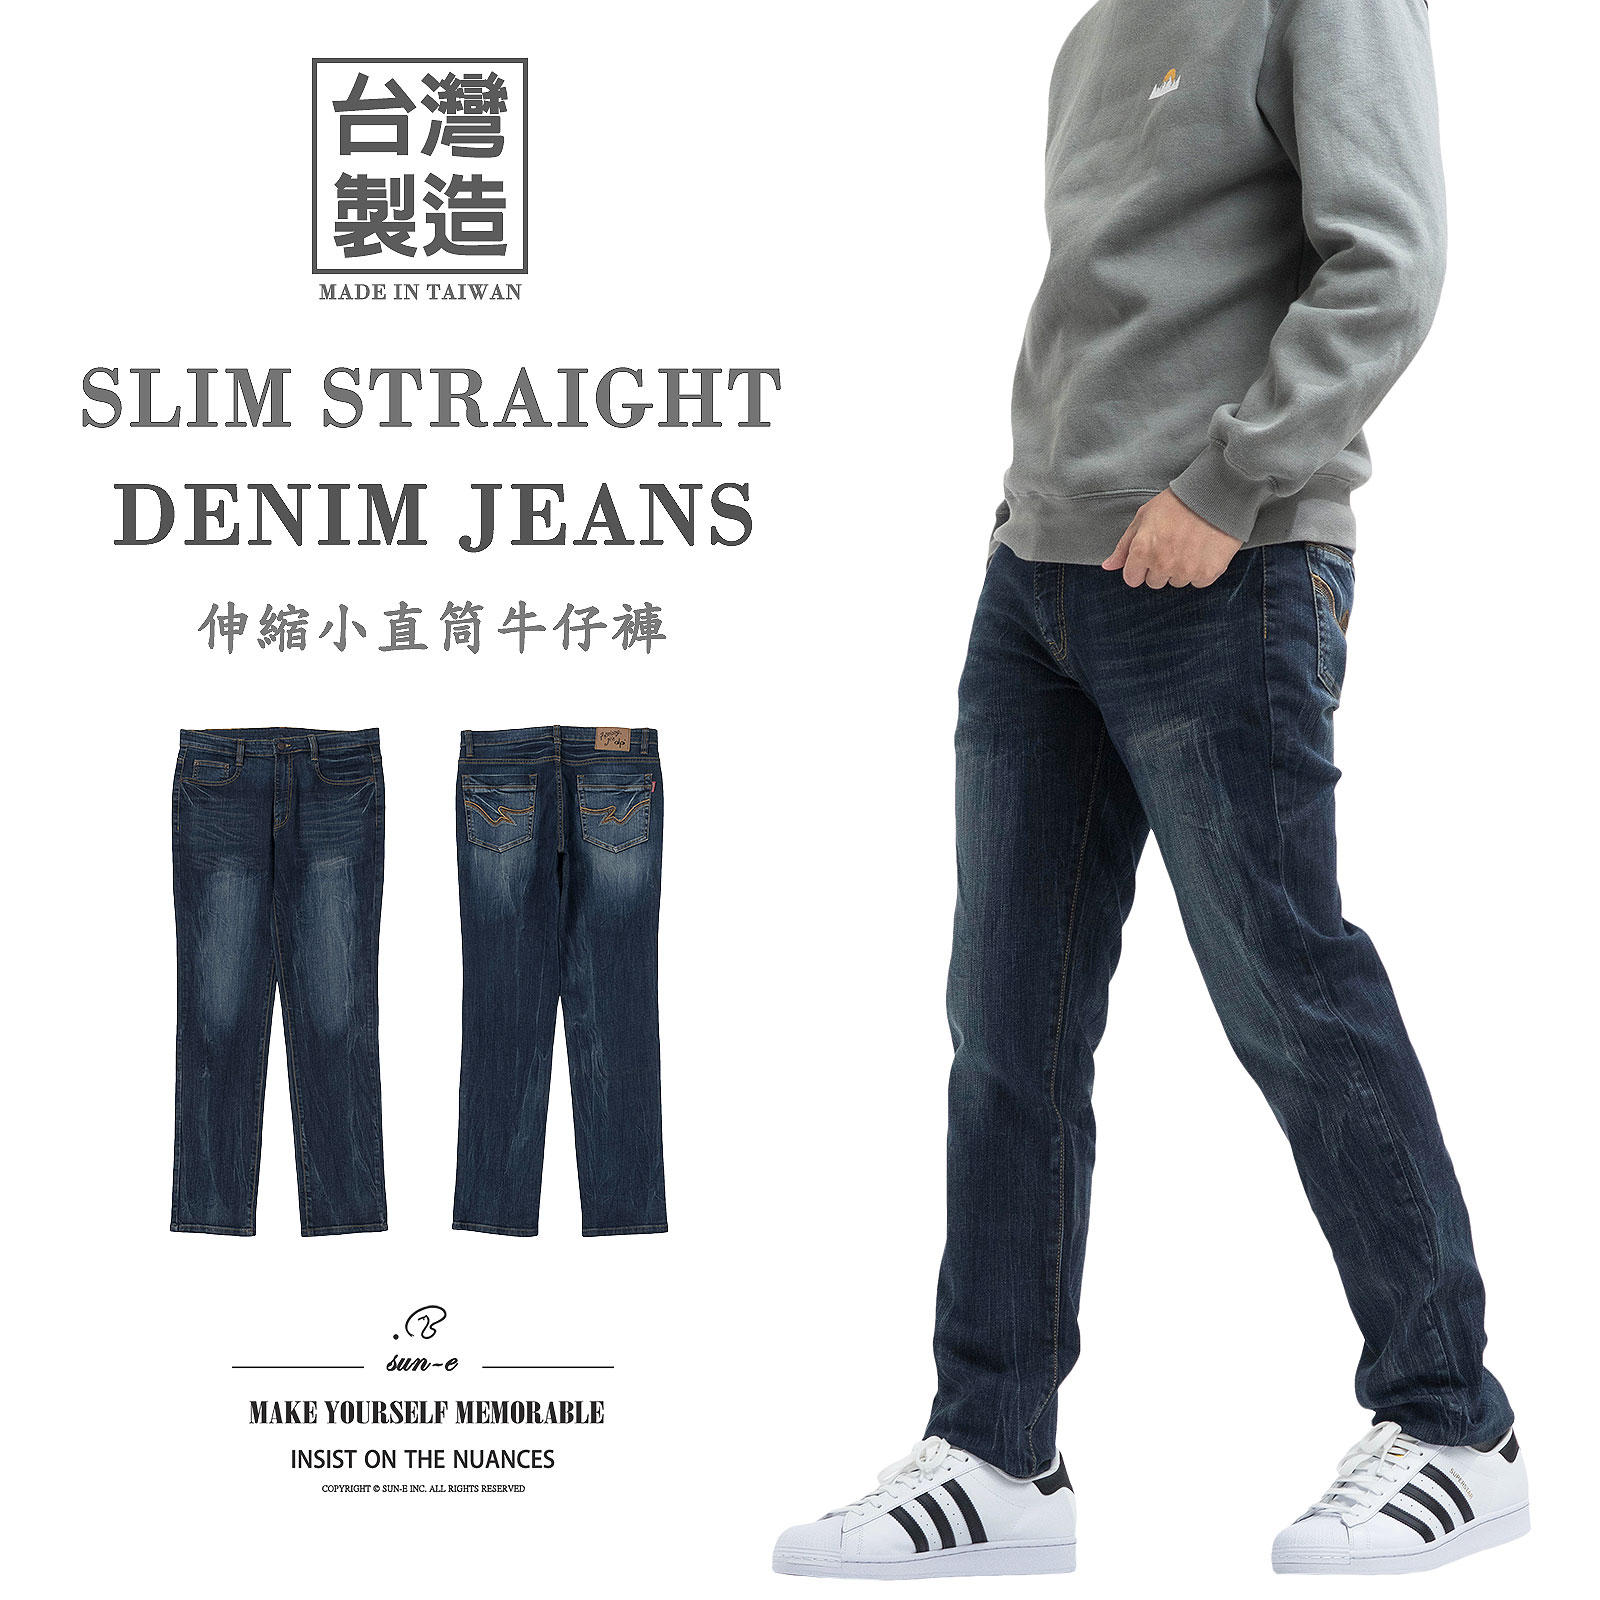 ［零碼促銷］sun-e顯瘦小直筒牛仔褲 台灣製牛仔褲 修身牛仔長褲 刷紋褲管彈性丹寧 刷白牛仔褲 百貨公司等級 直筒褲 YKK拉鍊 車繡後口袋 Made In Taiwan Jeans Slim Straight Jeans Denim Pants Stretch Jeans Embroidered Pockets (345-3245-08)深牛仔 M L XL 2L 3L 4L 腰圍:28~39英吋 (71~99公分) 男 [實體店面保障]